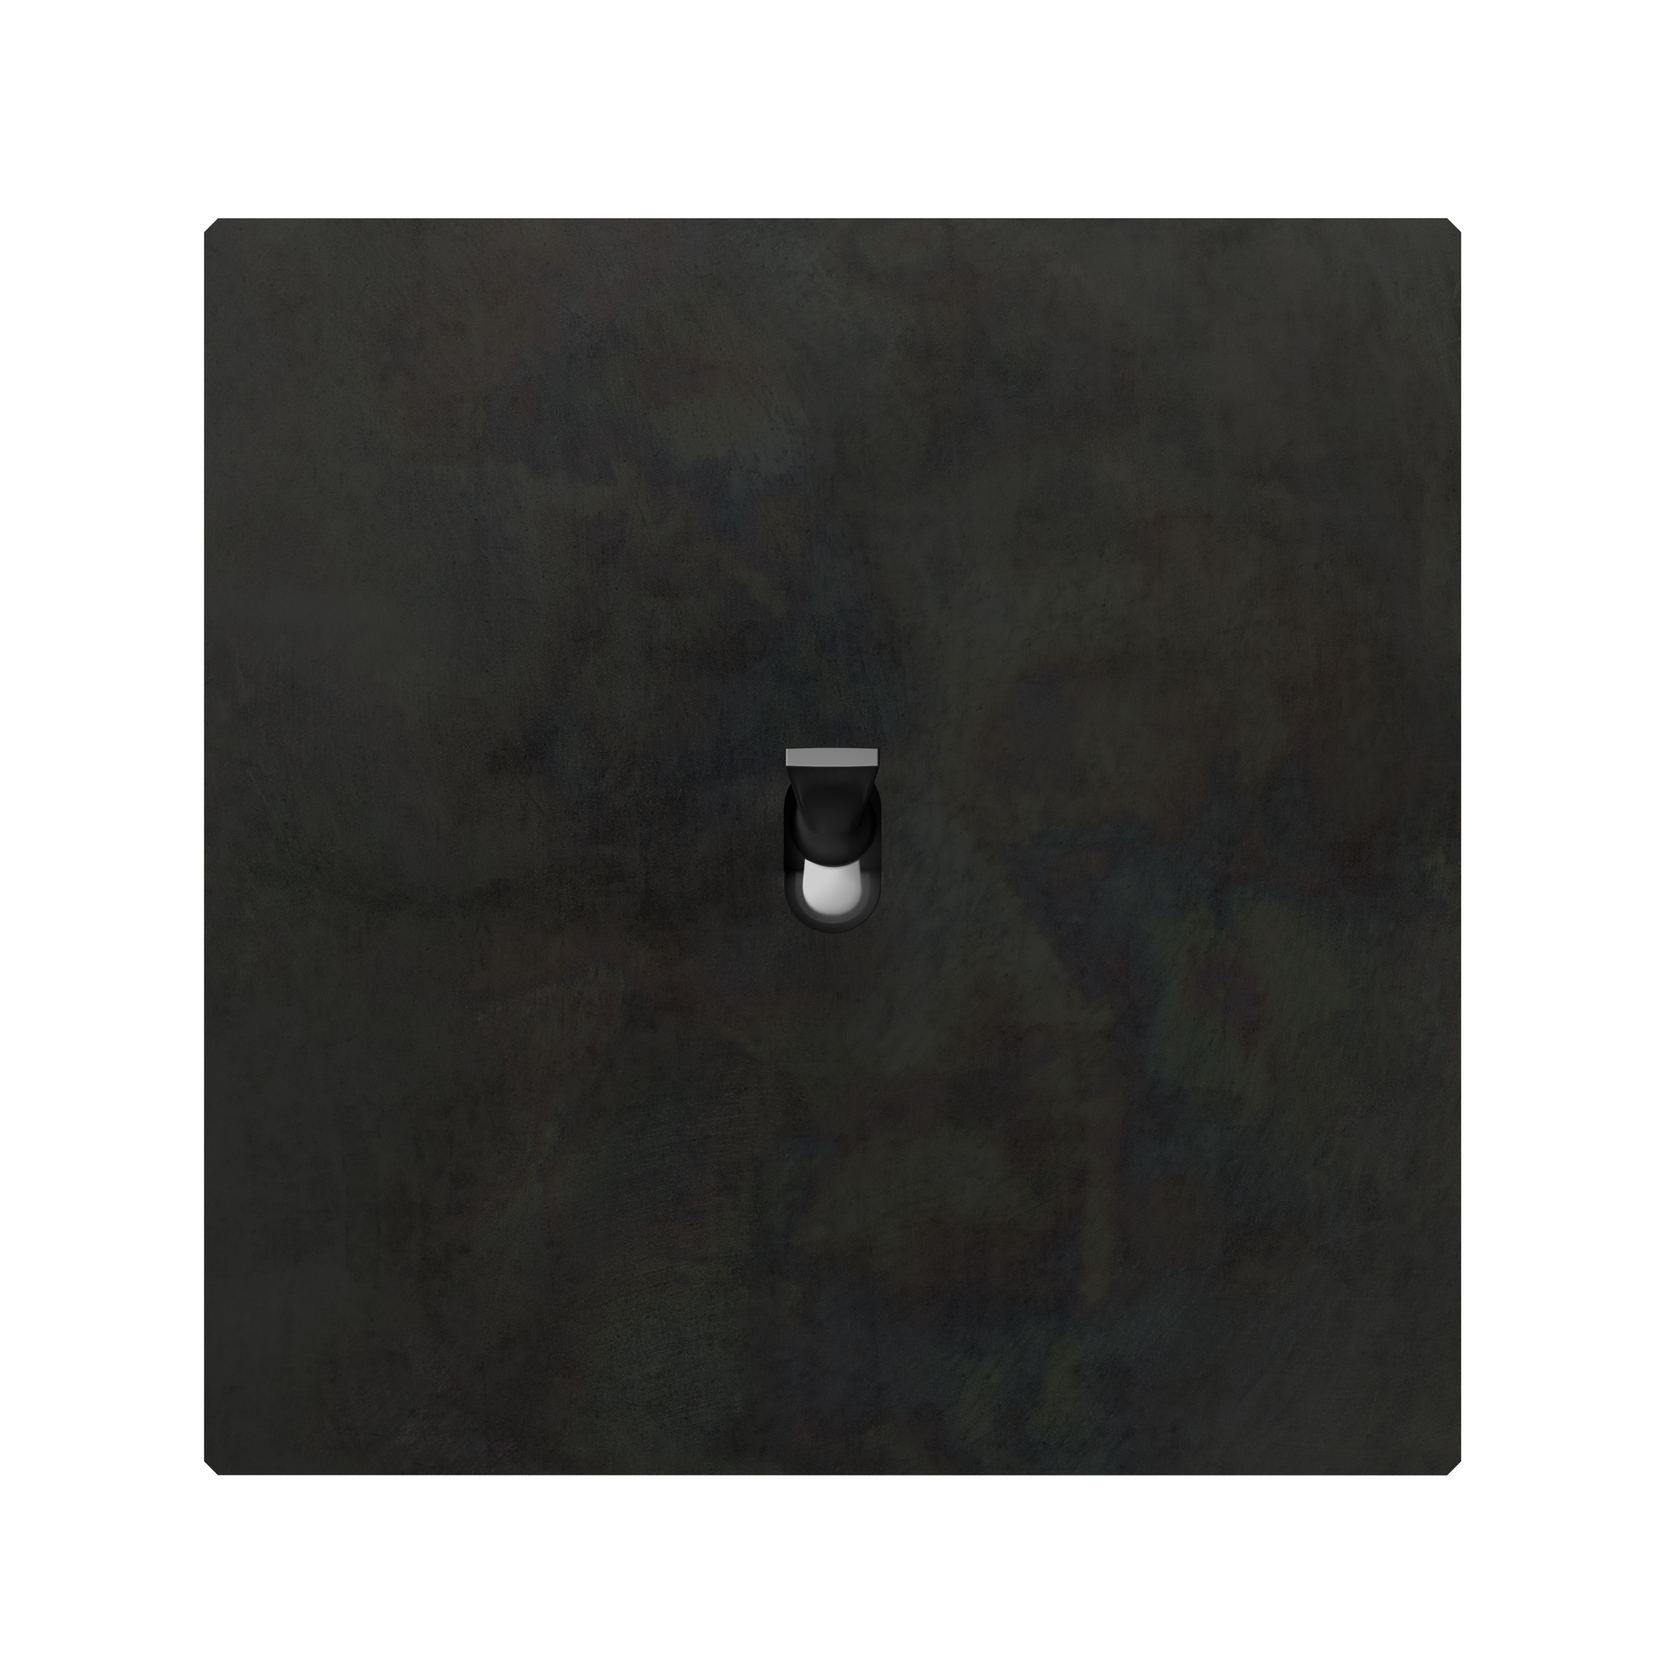 5.1 strömbrytare i antikt järn med knapp i svart nickel